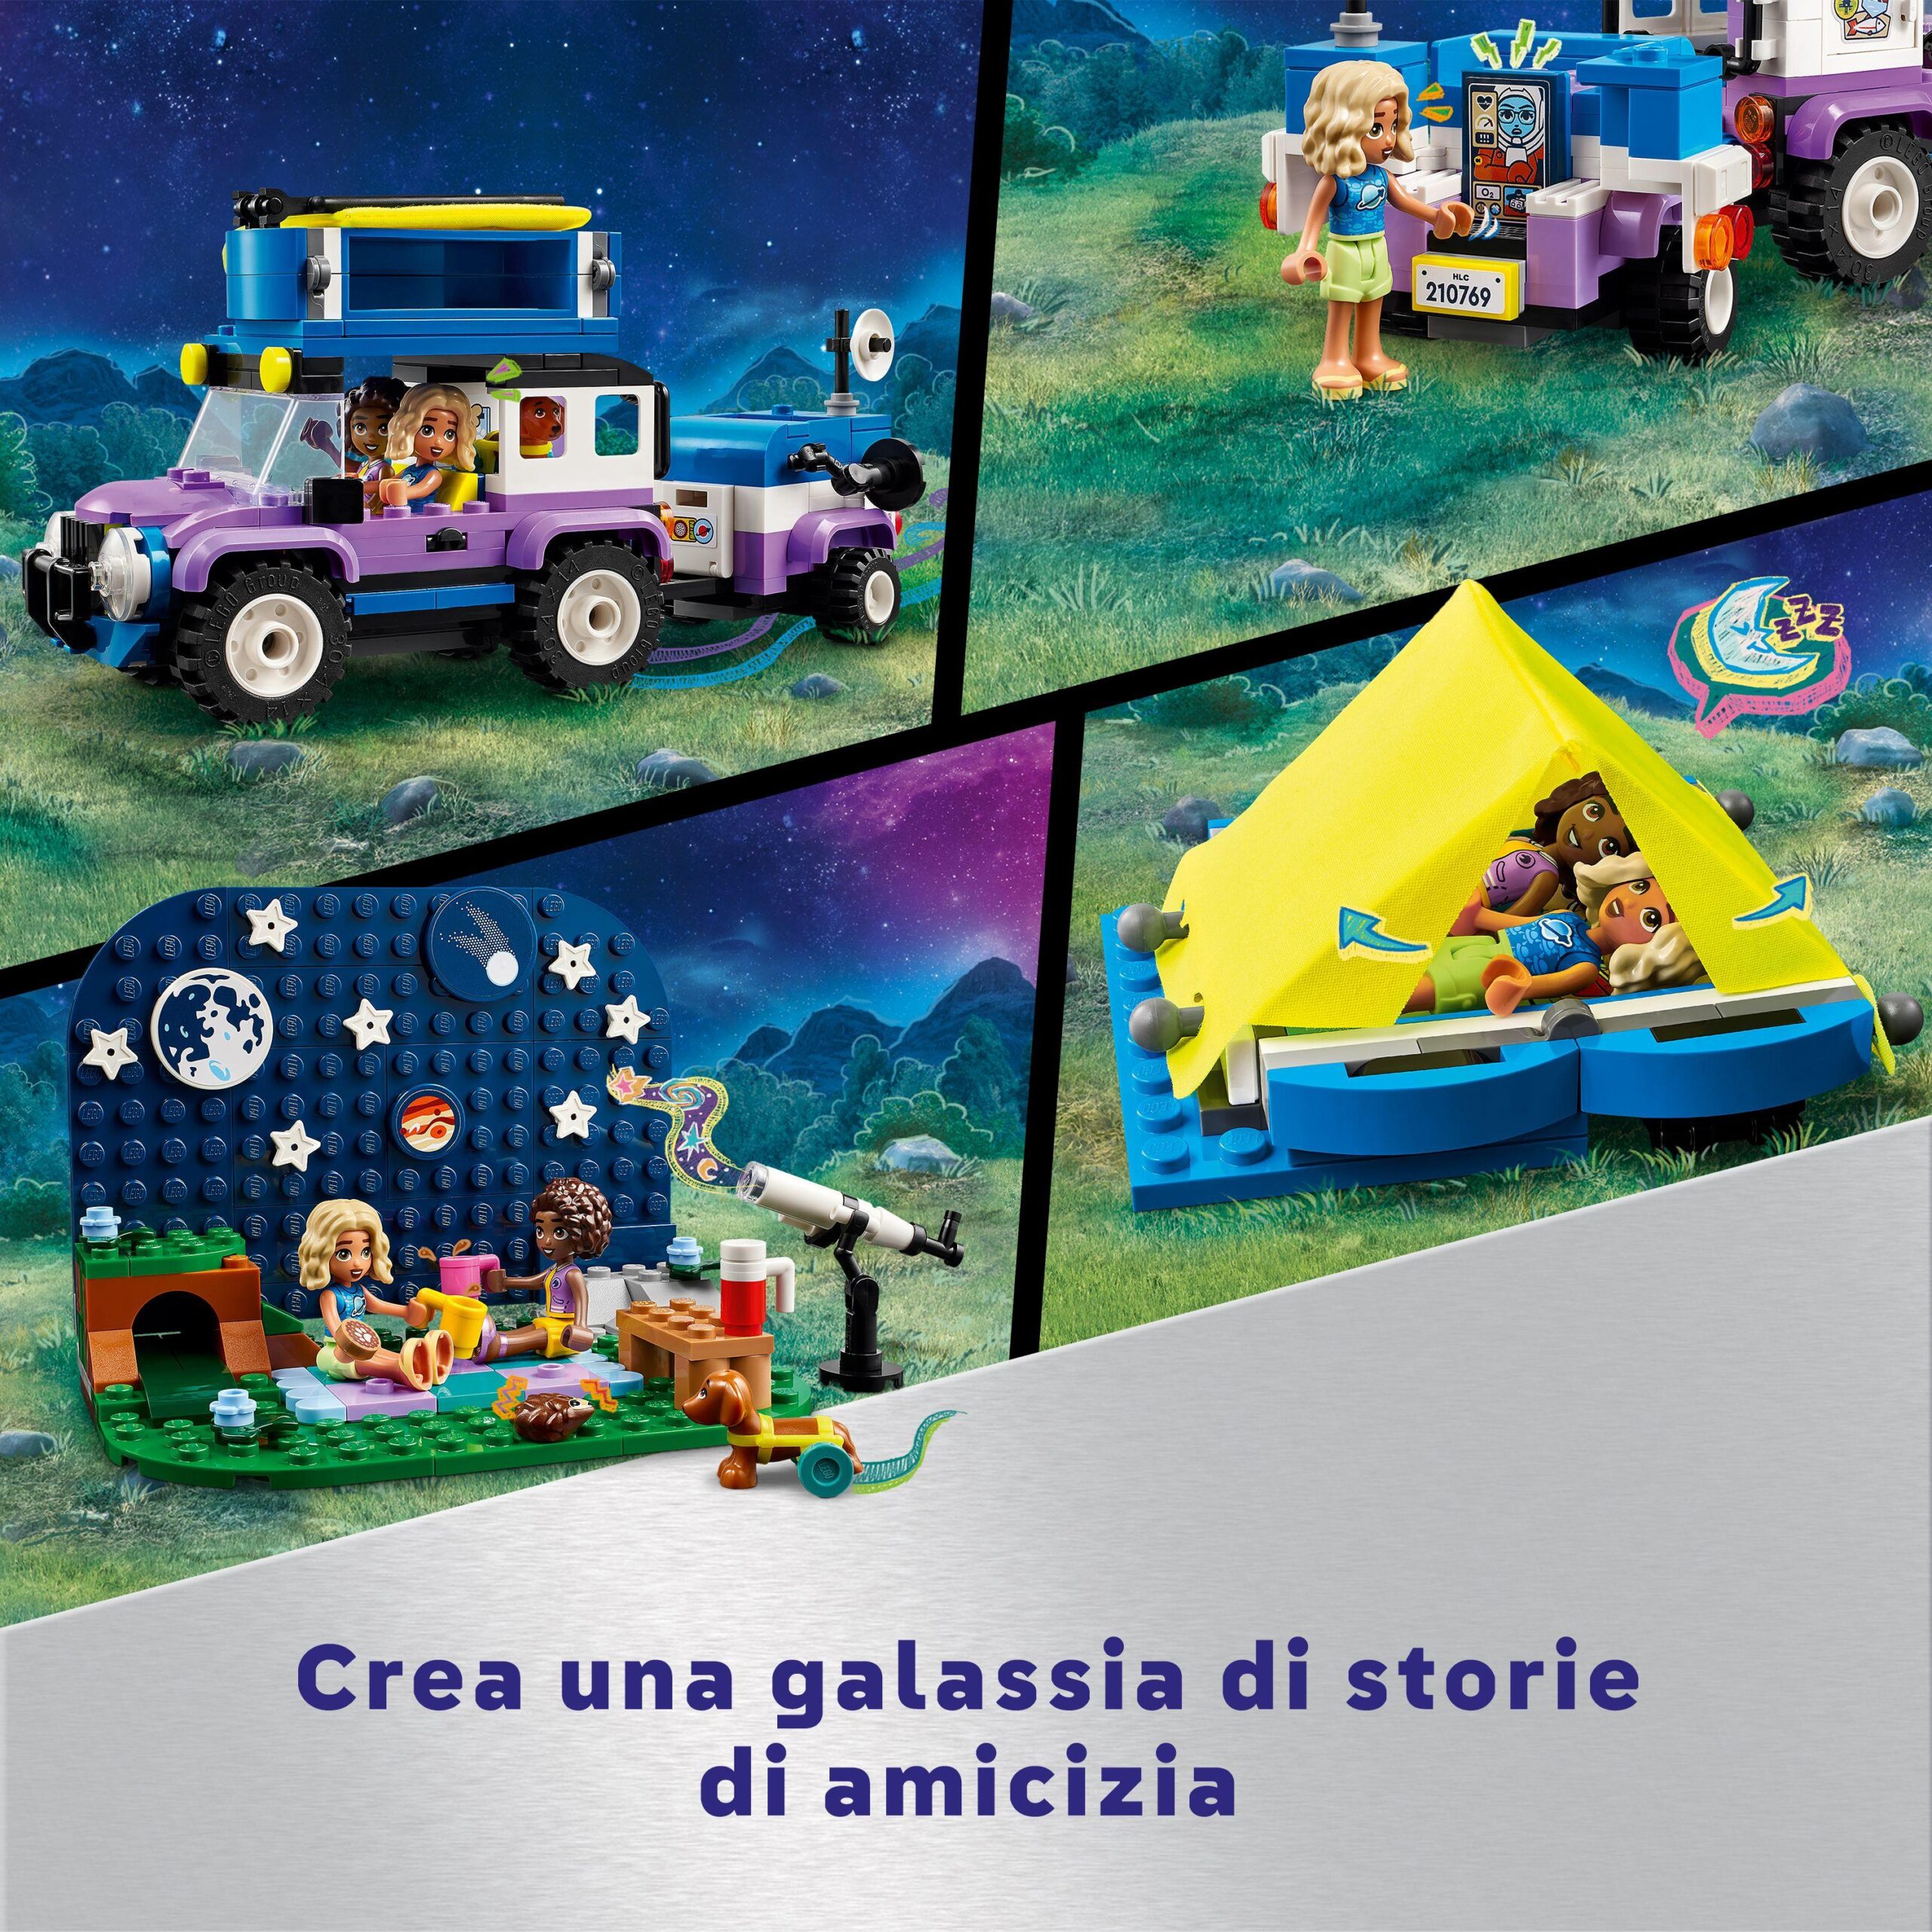 Lego friends 42603 camping-van sotto le stelle, giochi per bambini 7+ con telescopio giocattolo, auto, mini bamboline e cane - LEGO FRIENDS